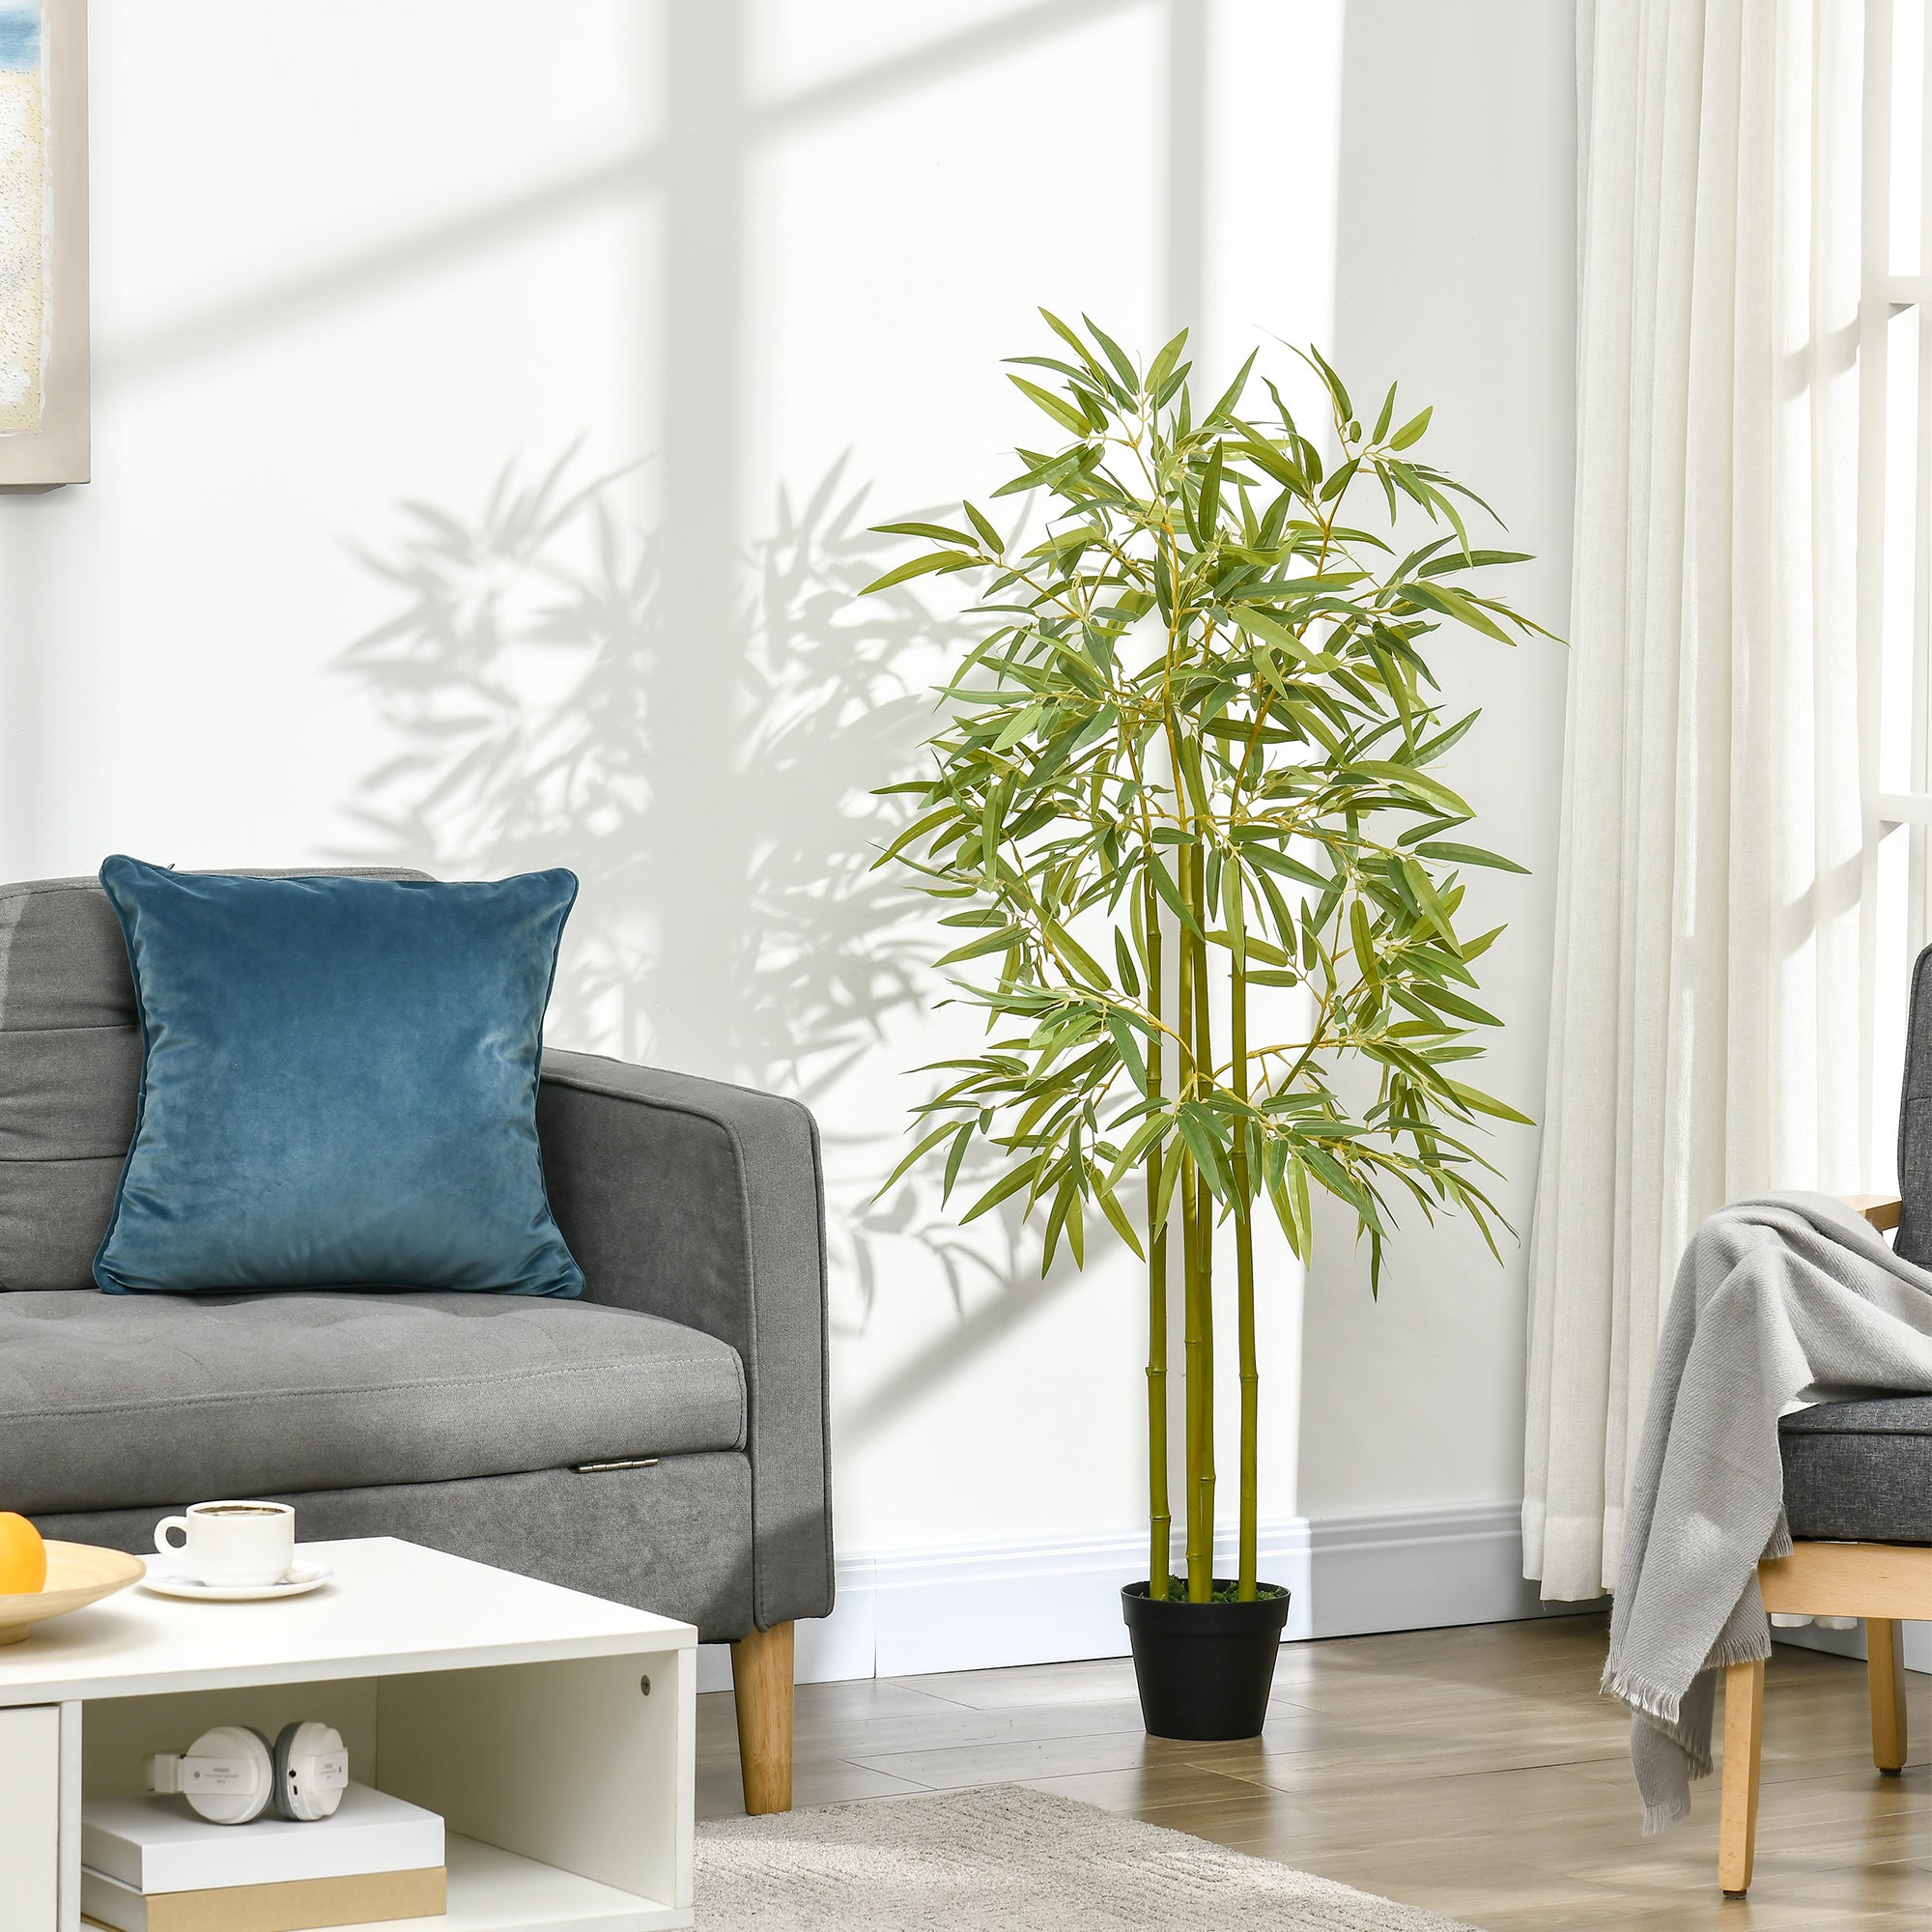 Easycomfort Bambù in Vaso Artificiale, Pianta Finta Decorazione per Interno ed Esterno, Altezza 120cm, Verde